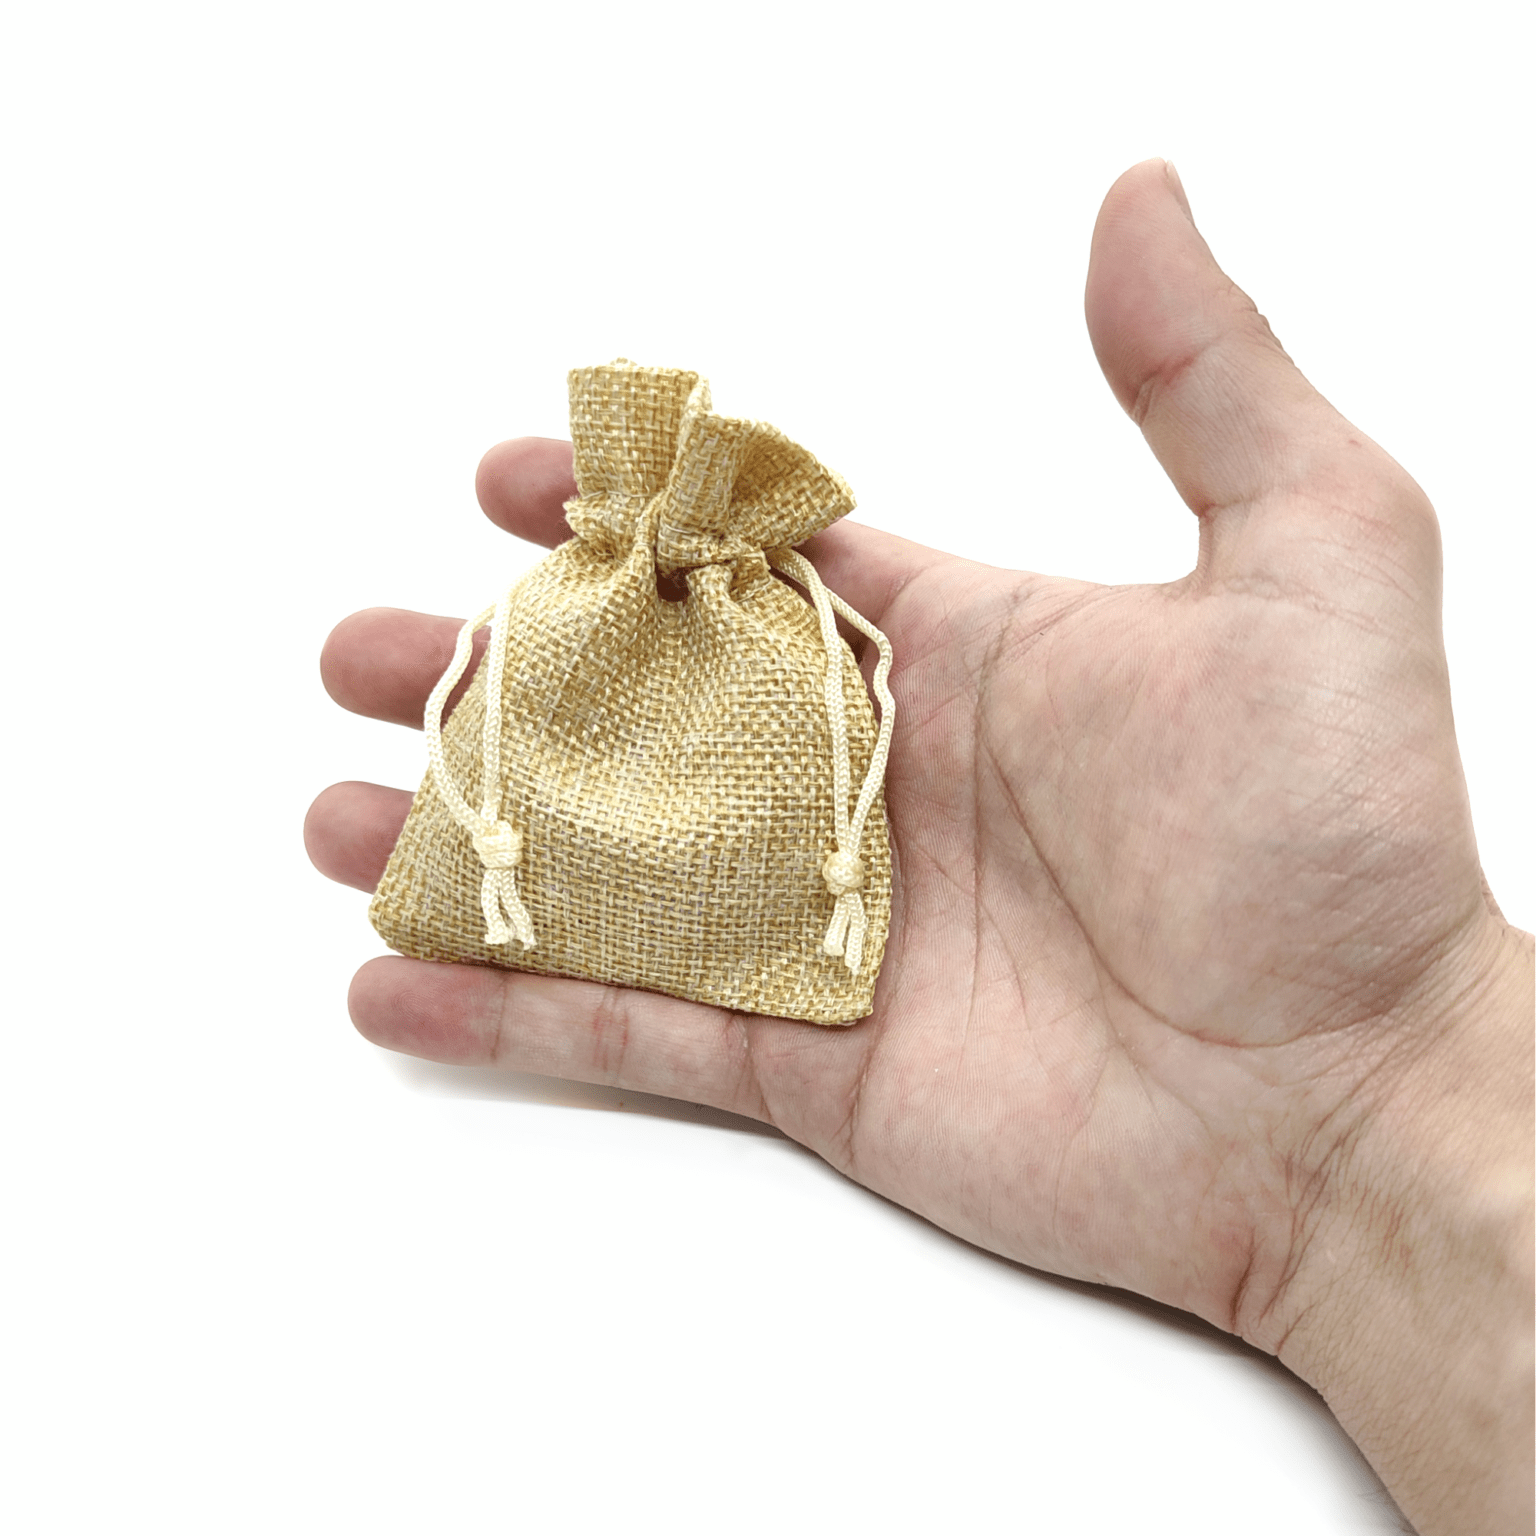 Produktpräsentation des Lieferumfangs eines Mystery Crystal Deluxe. Zu sehen ist ein Säckchen in welchem sich Steine befinden.